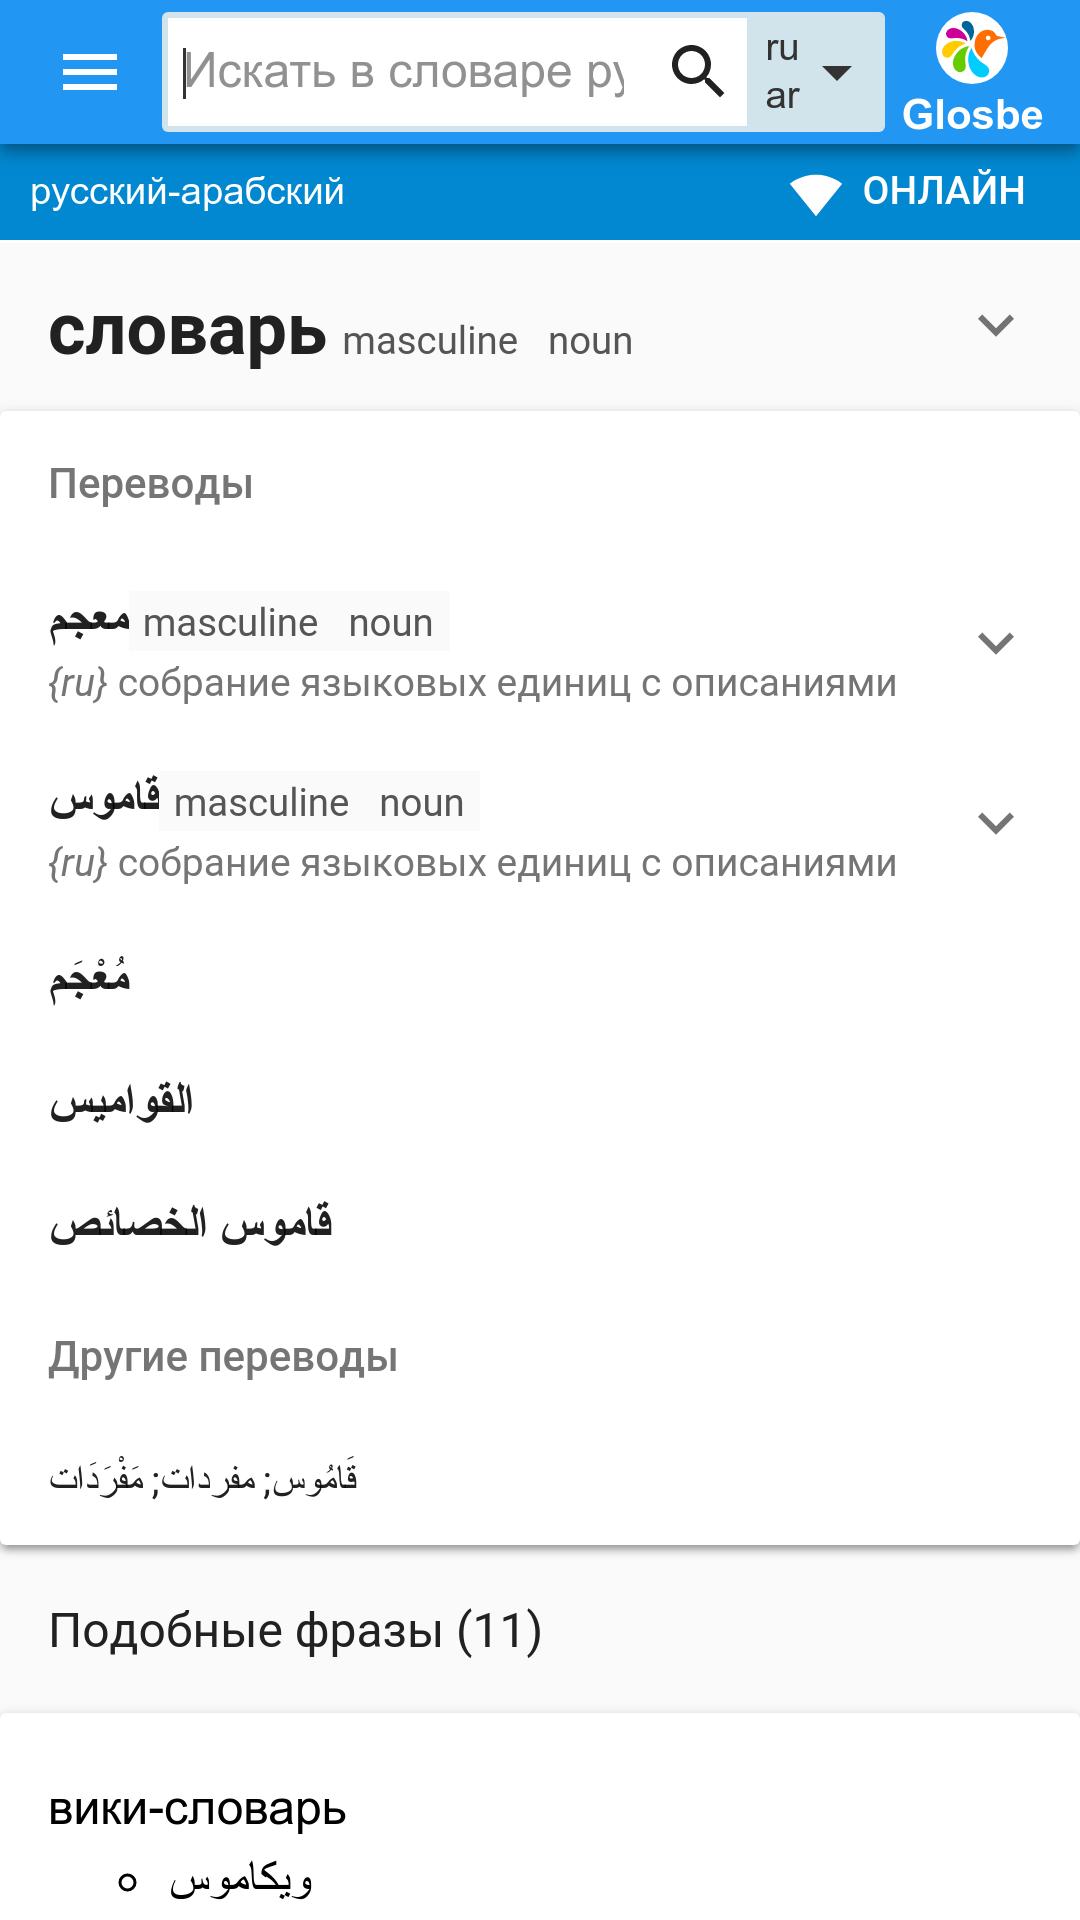 Голосовой русский. Арабский словарь андроид.